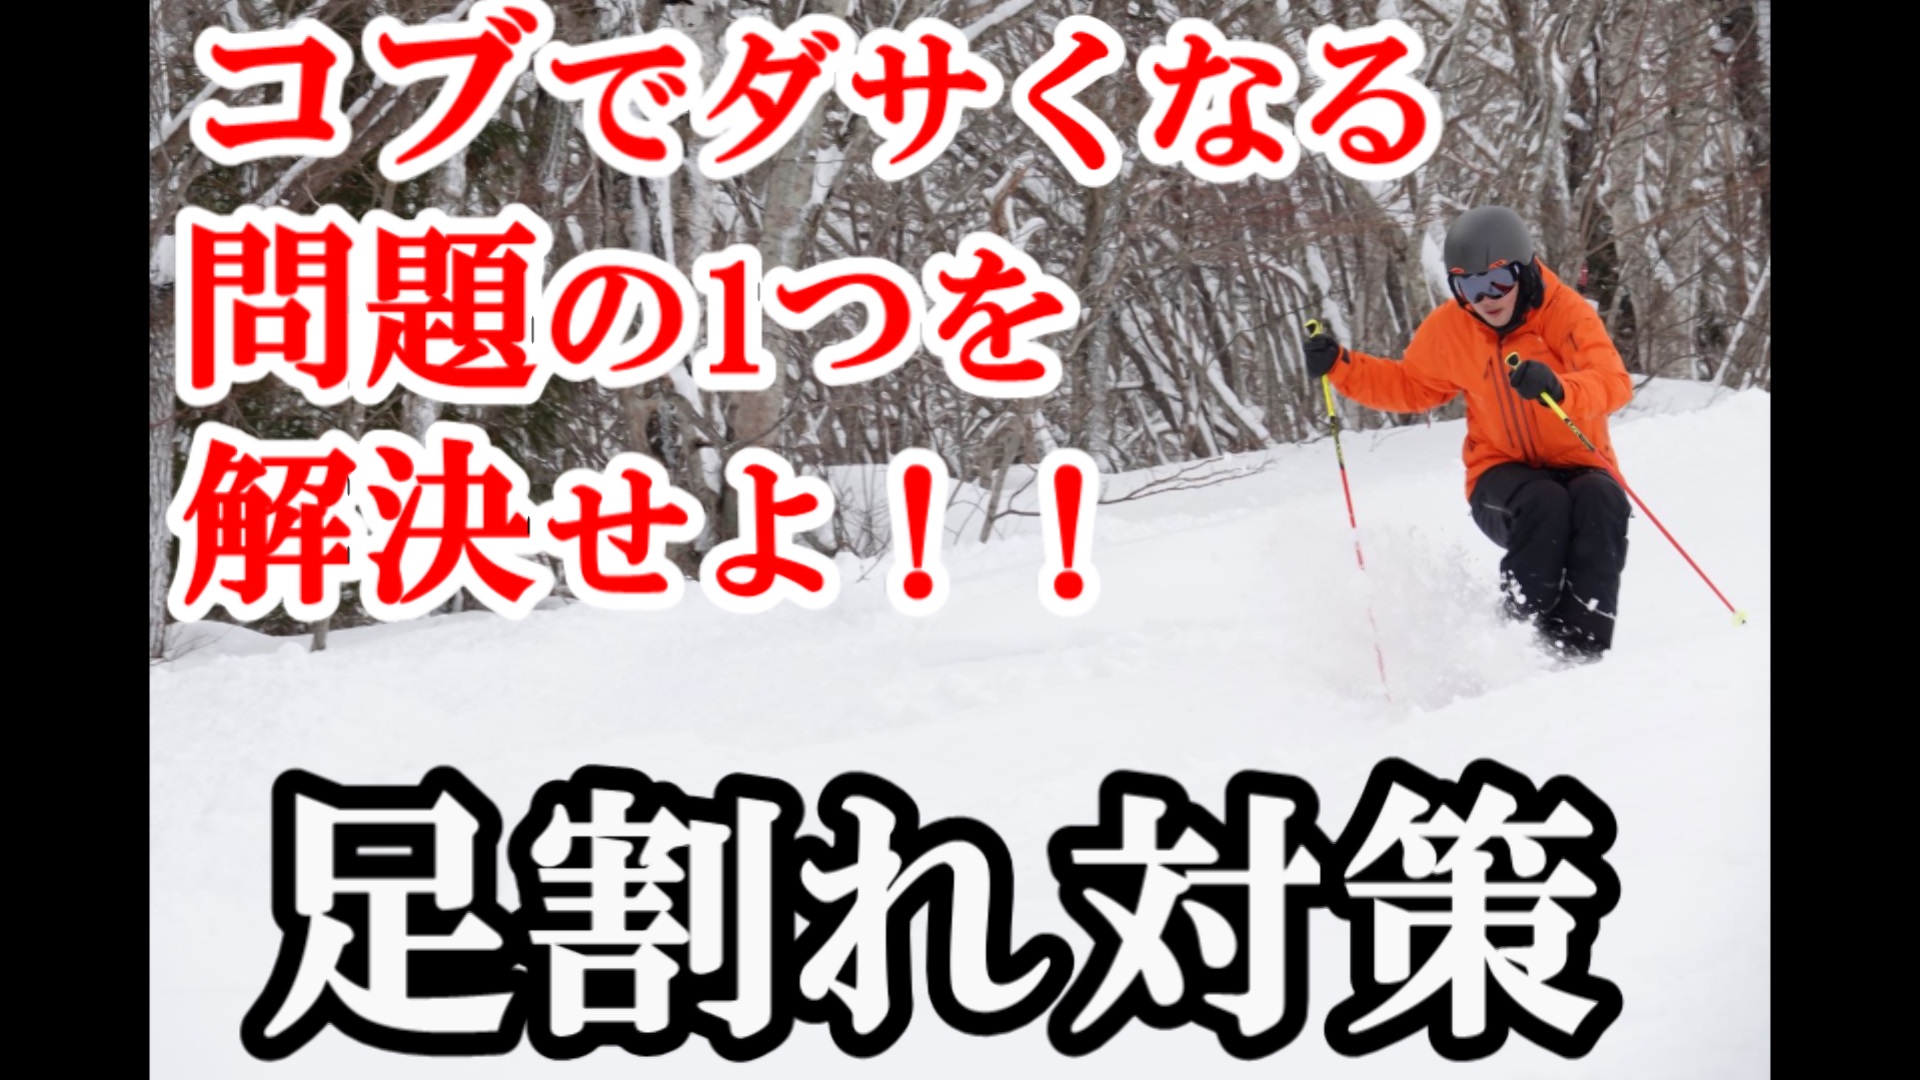 動画更新 コブ滑りのダサい 足割れ対策 コブ斜面の滑り方スキーレッスン 上田諒太郎のコブの極意